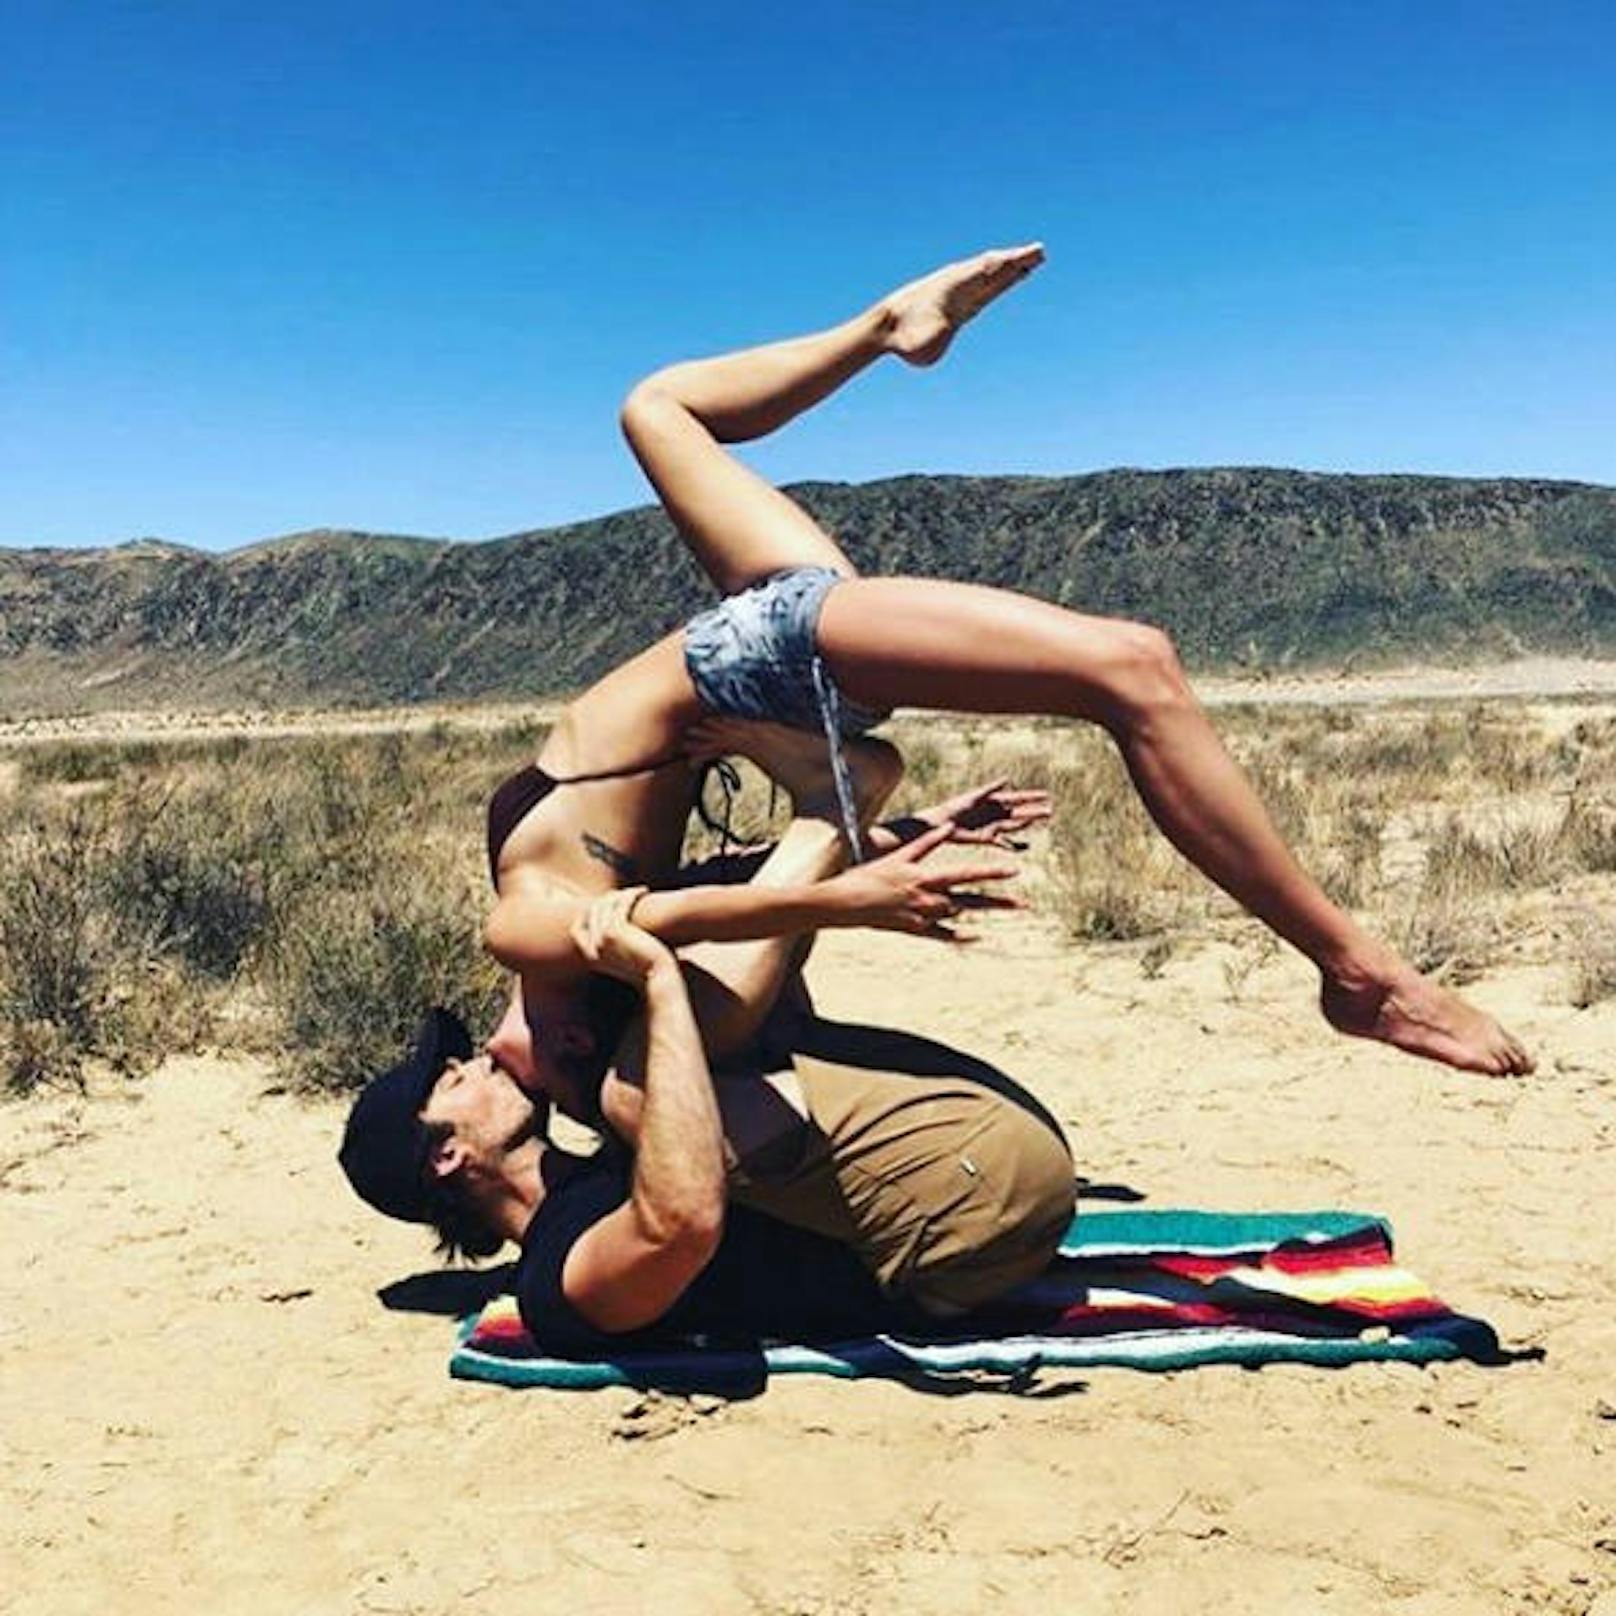 03.06.2018: So romantisch kann Yoga sein! Die beiden Schauspieler Nikki Reed und Ian Somerhalder nutzen das Training für einen zärtlichen Kuss.